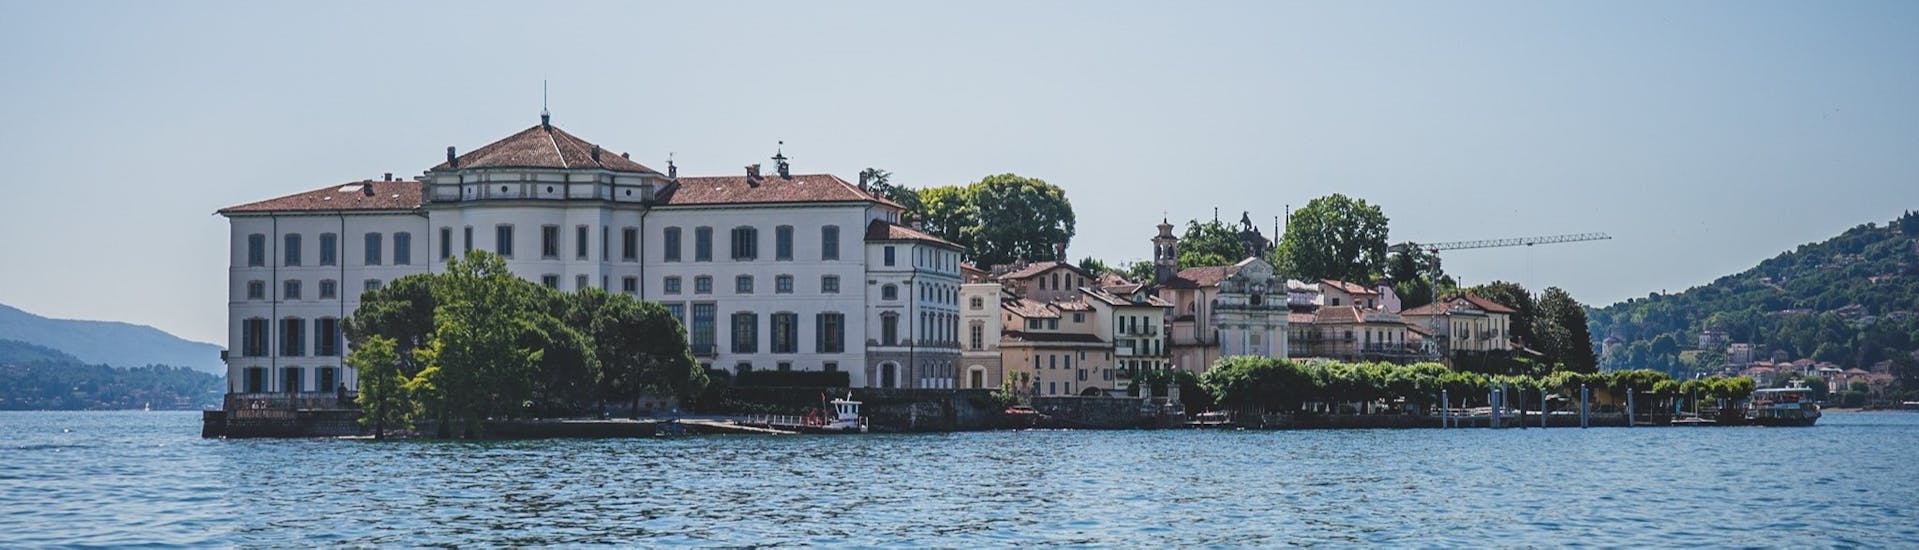 Blick auf den Palazzo Borromeo, erreichbar mit dem Bootstransfer von Baveno zur Isola Bella und Isola dei Pescatori mit Summer Boats Baveno.